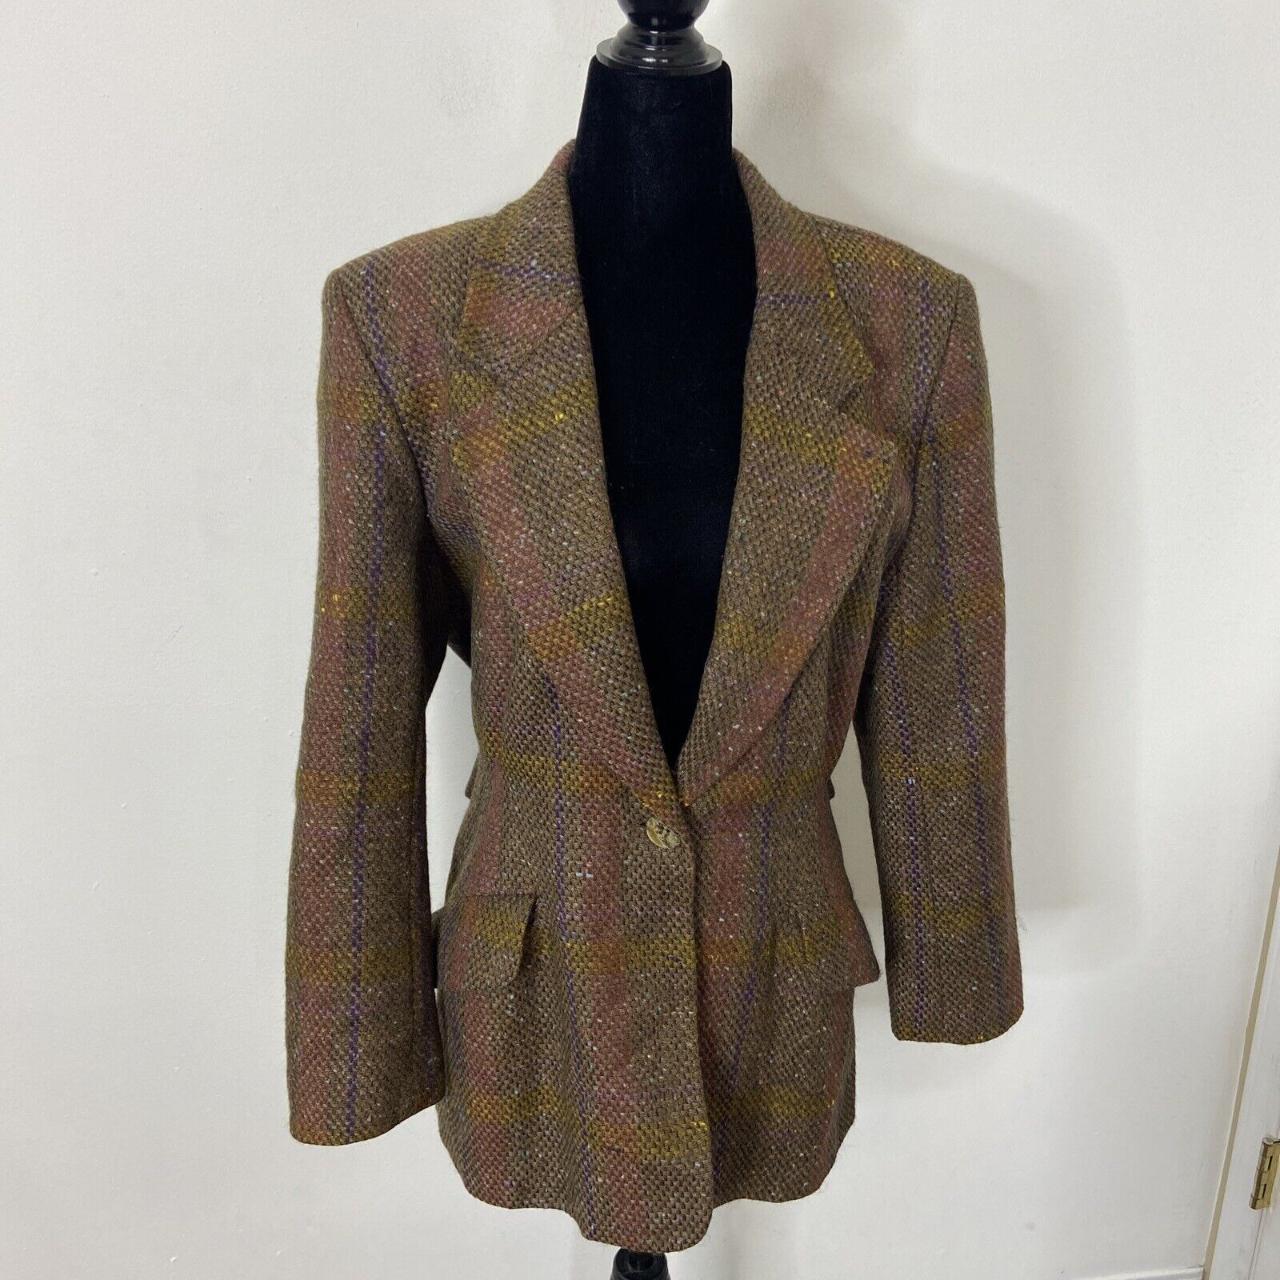 Vintage Mr Jax Wool Tweed 70s Sports Coat Blazer... - Depop